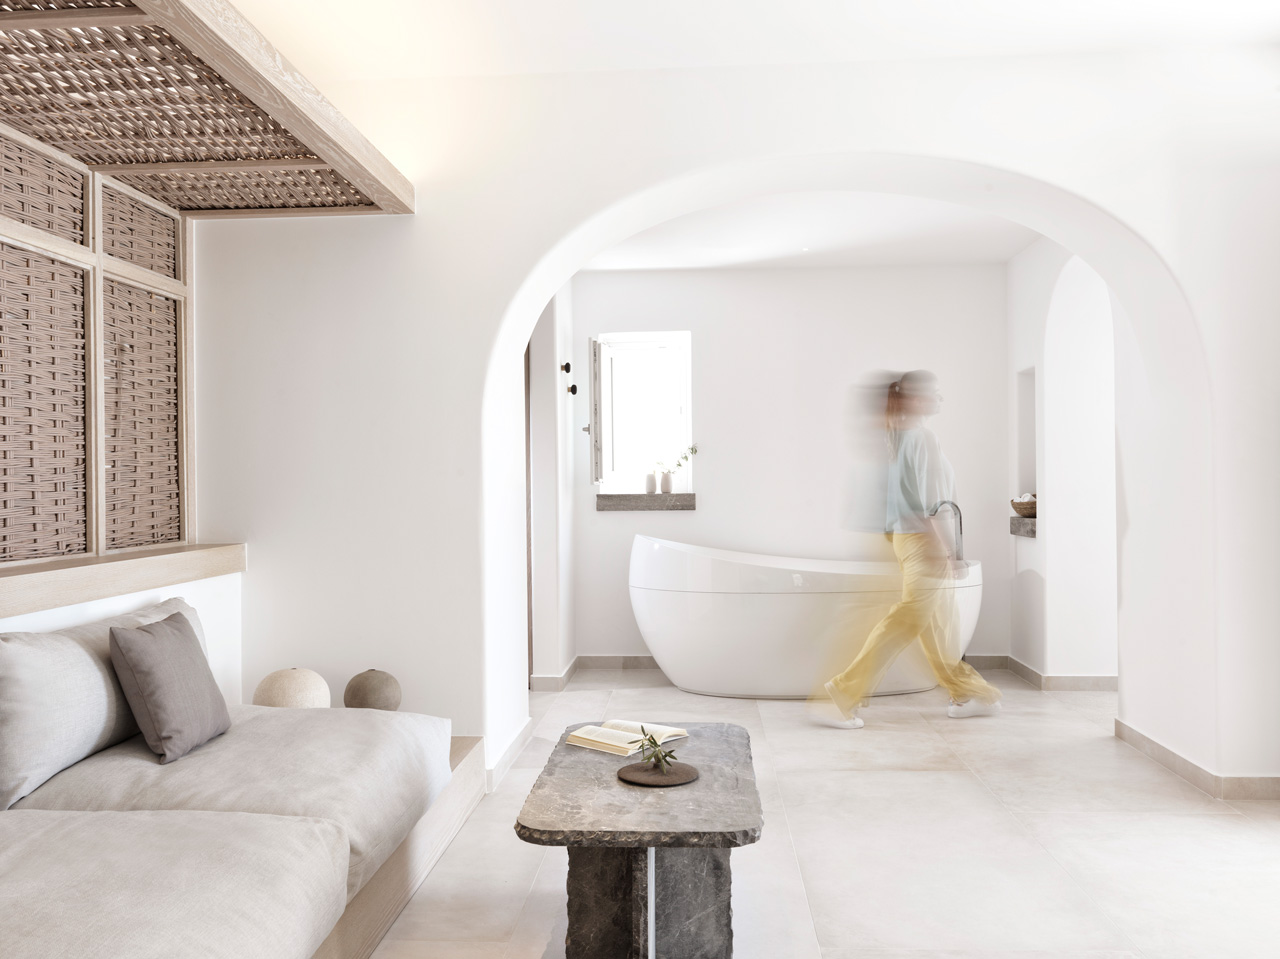 Santorini, Greece Vacations Luxury 1 Bedroom Villa, Canaves Oia Epitome, Casol